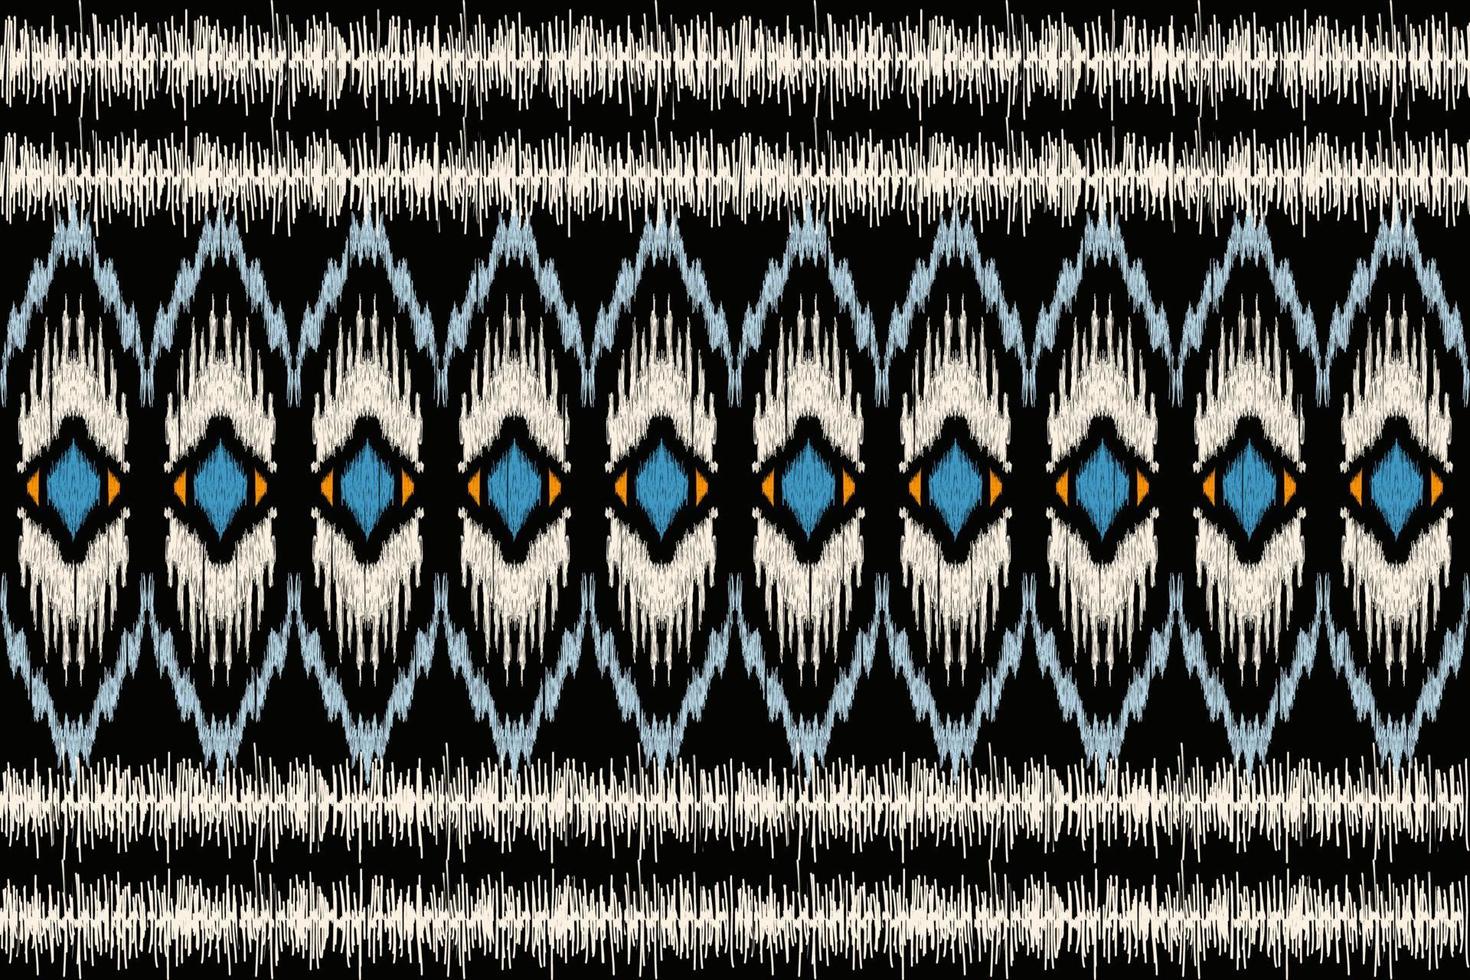 bordado floral ikat paisley sobre fondo negro.patrón oriental étnico geométrico tradicional.ilustración vectorial abstracta de estilo azteca.diseño para textura,tela,ropa,envoltura,decoración,bufanda. vector